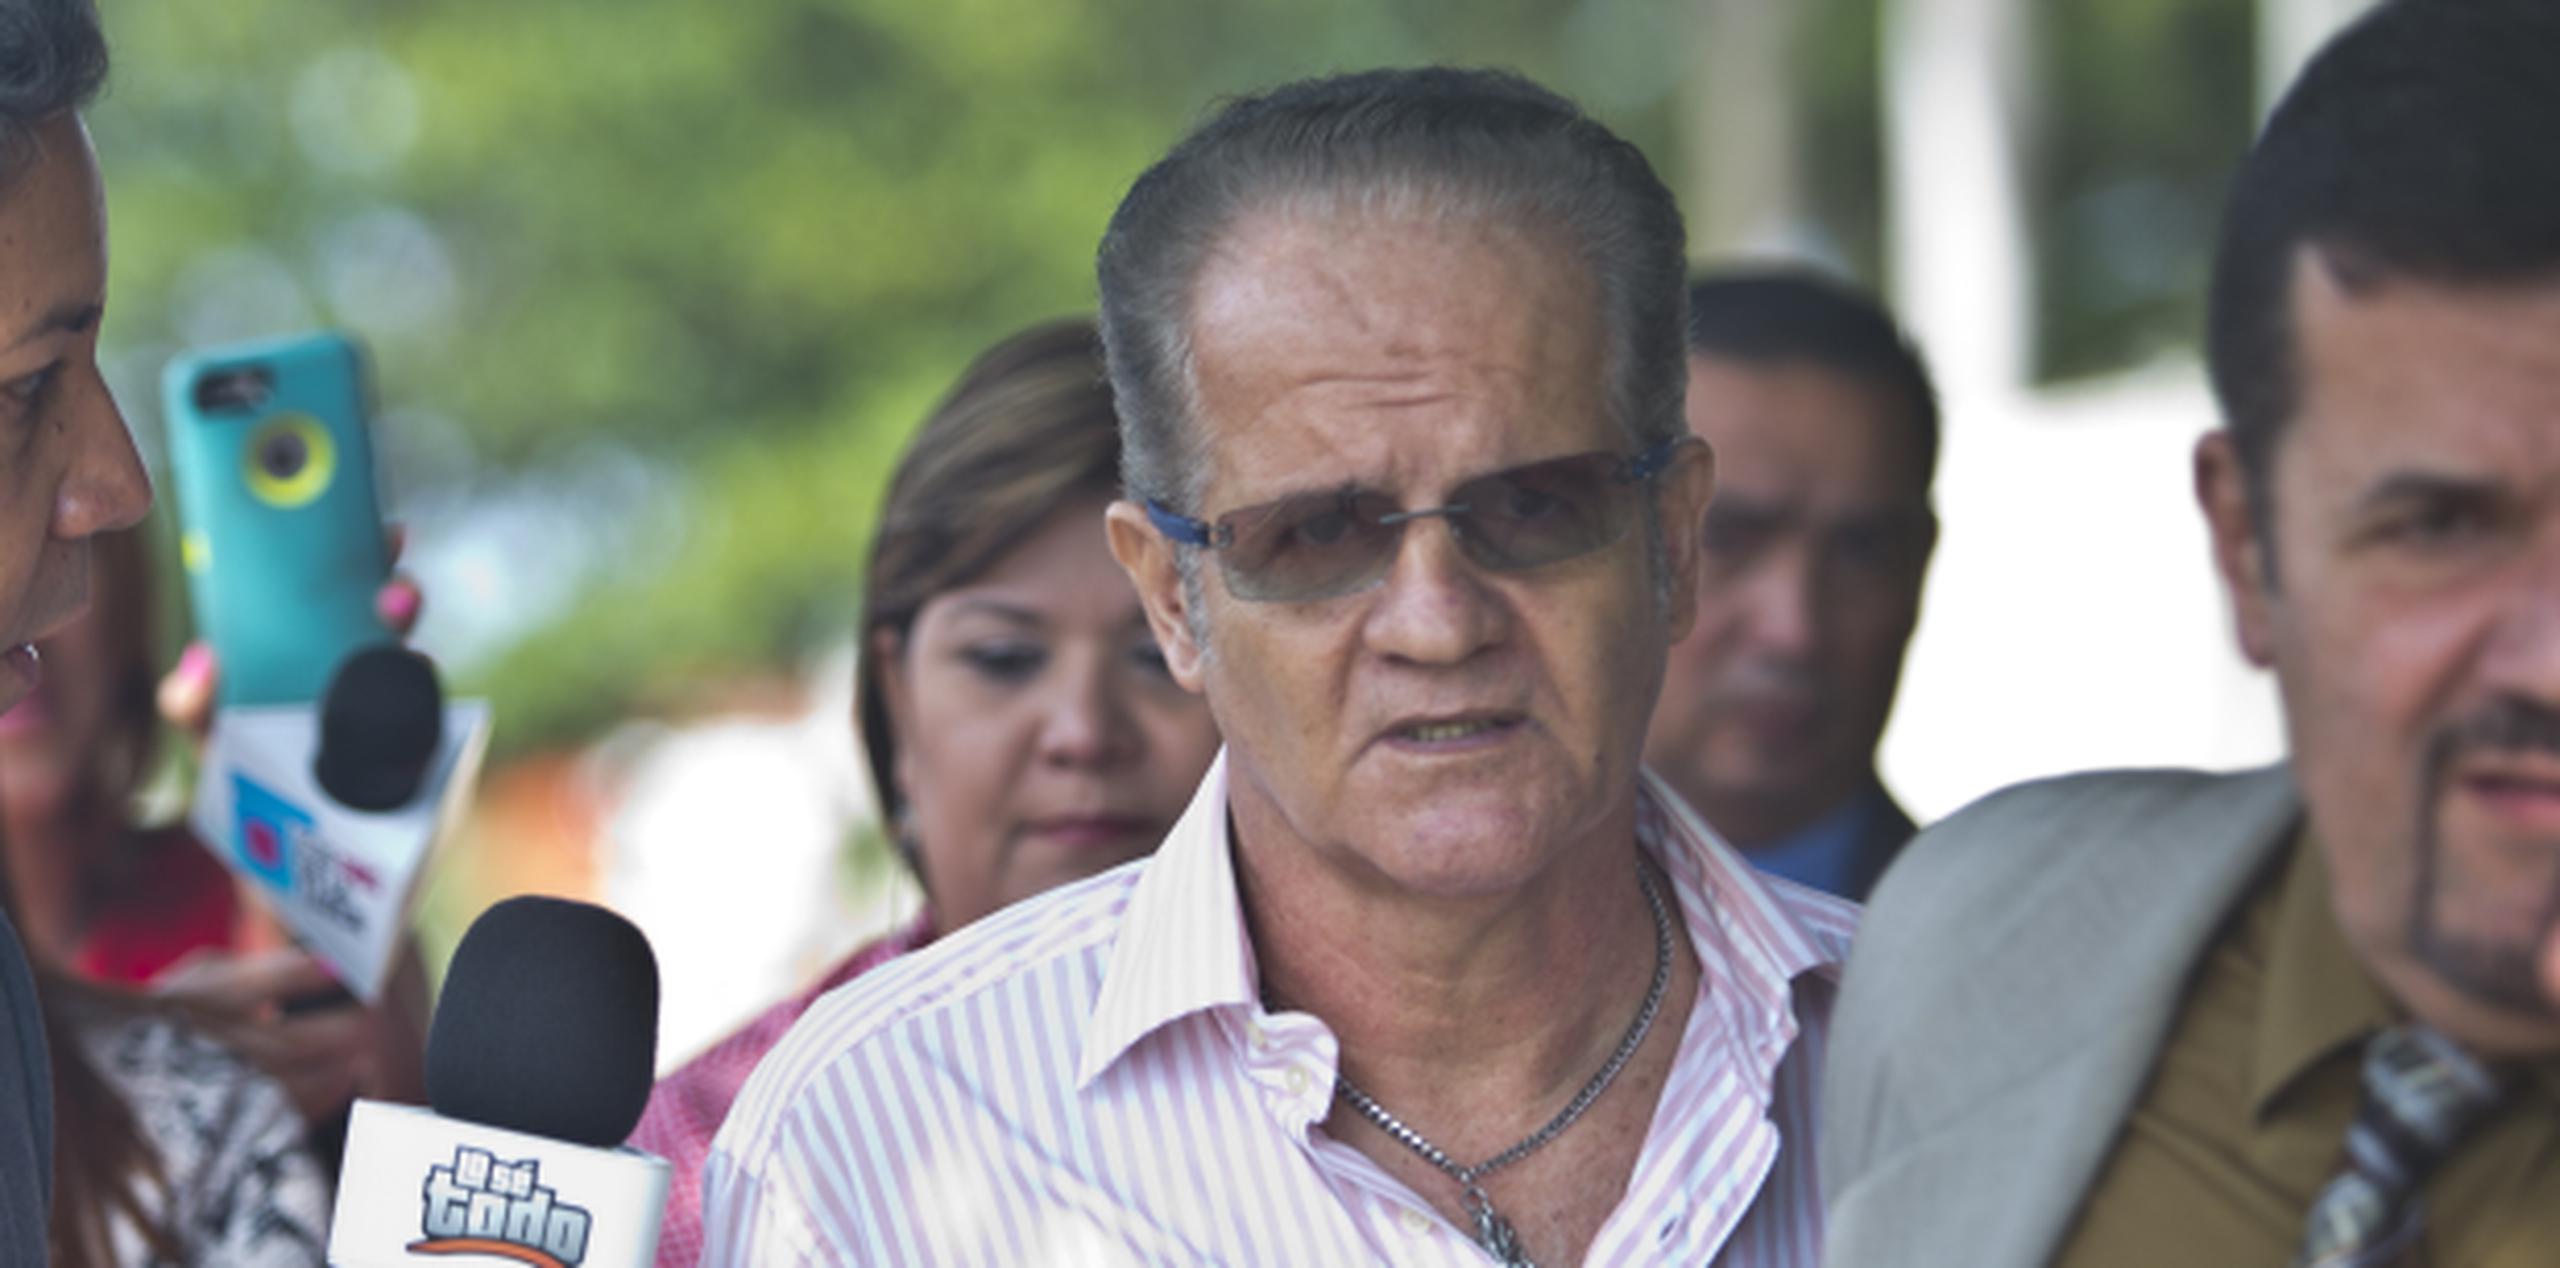 El imputado José L. Nieves Pagán es cuestionado por representantes de diversos medios en las inmediaciones del tribunal de Arecibo. (jorge.ramirez@gfrmedia.com)